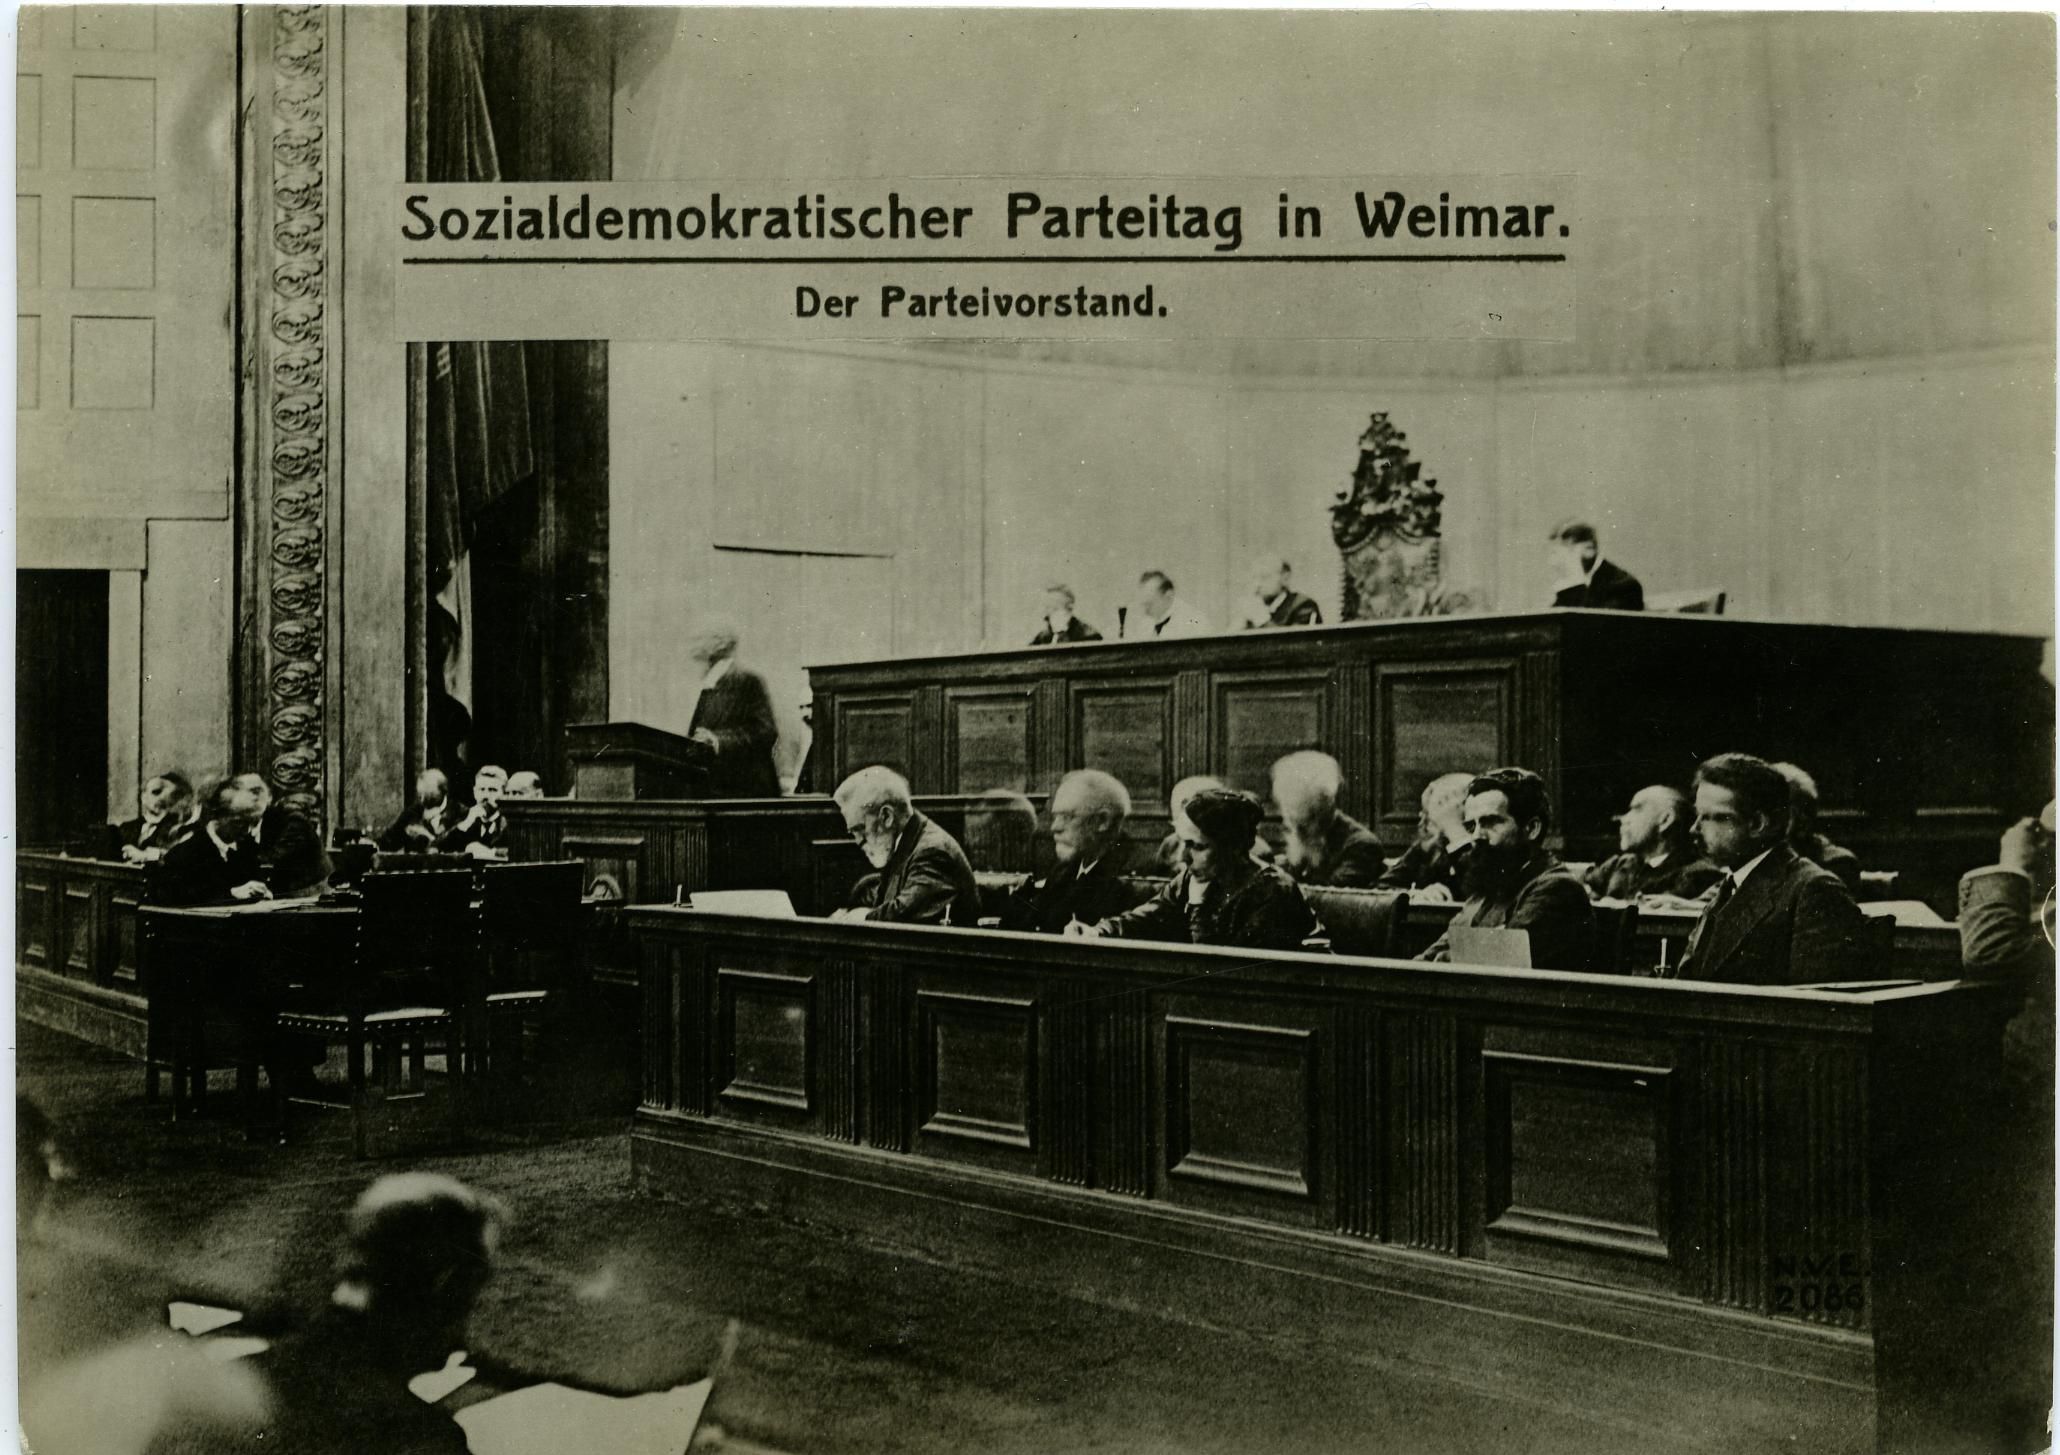 Foto: Der Parteivorstand beim Sozialdemokratischen Parteitag in Weimar, 1919